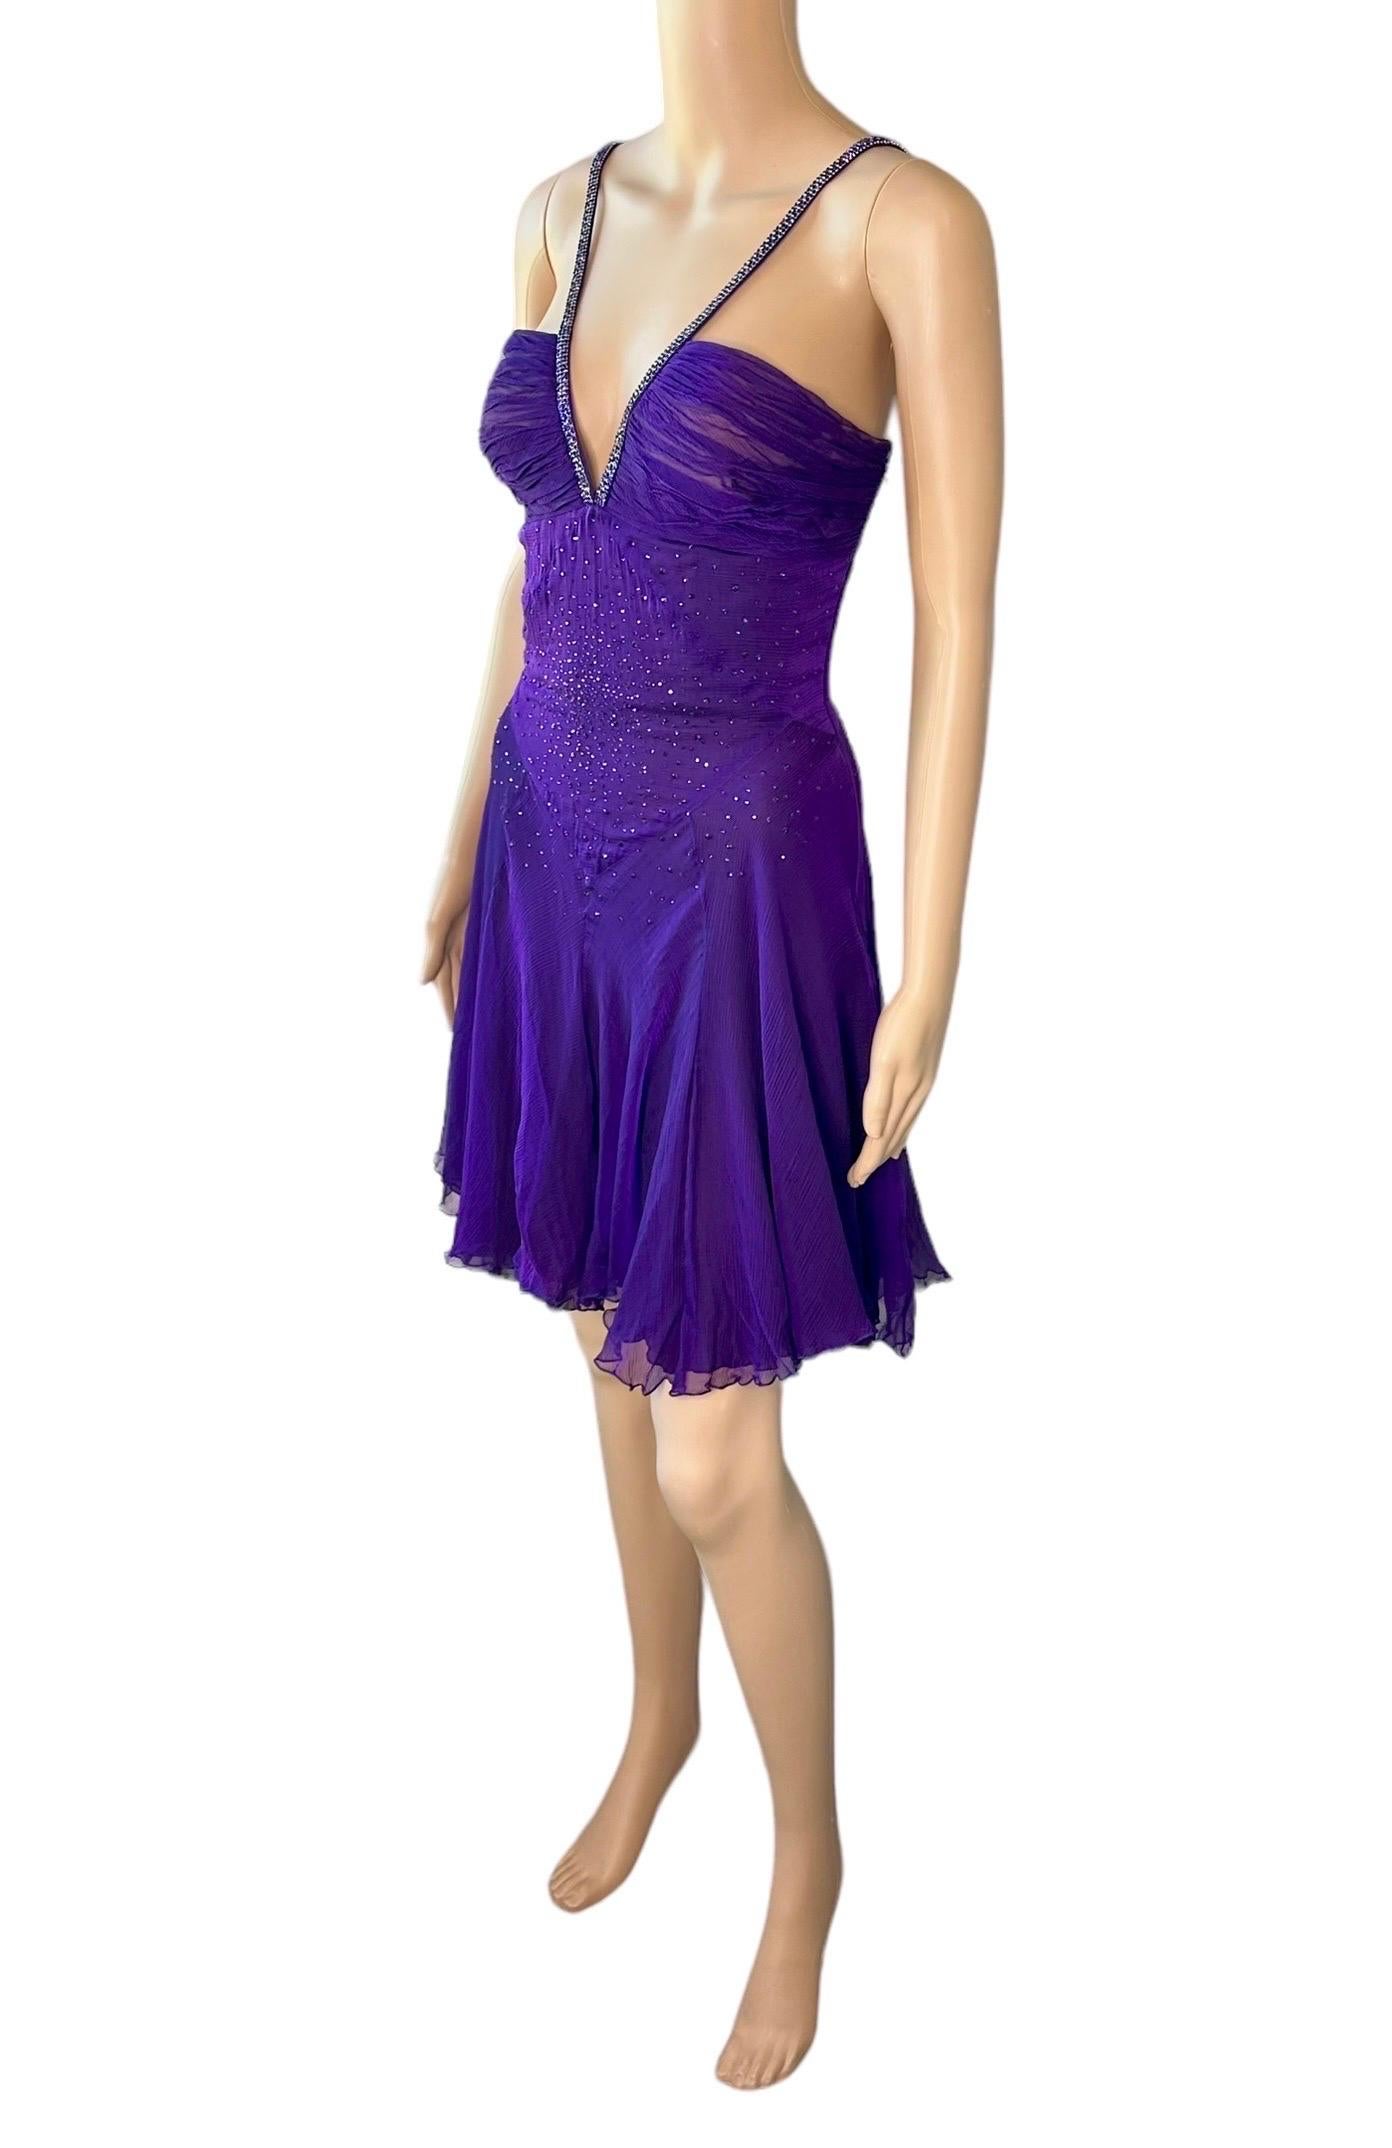 Versace c.2007 Crystal Embellished Plunging Neckline Semi-Sheer Purple Dress For Sale 7